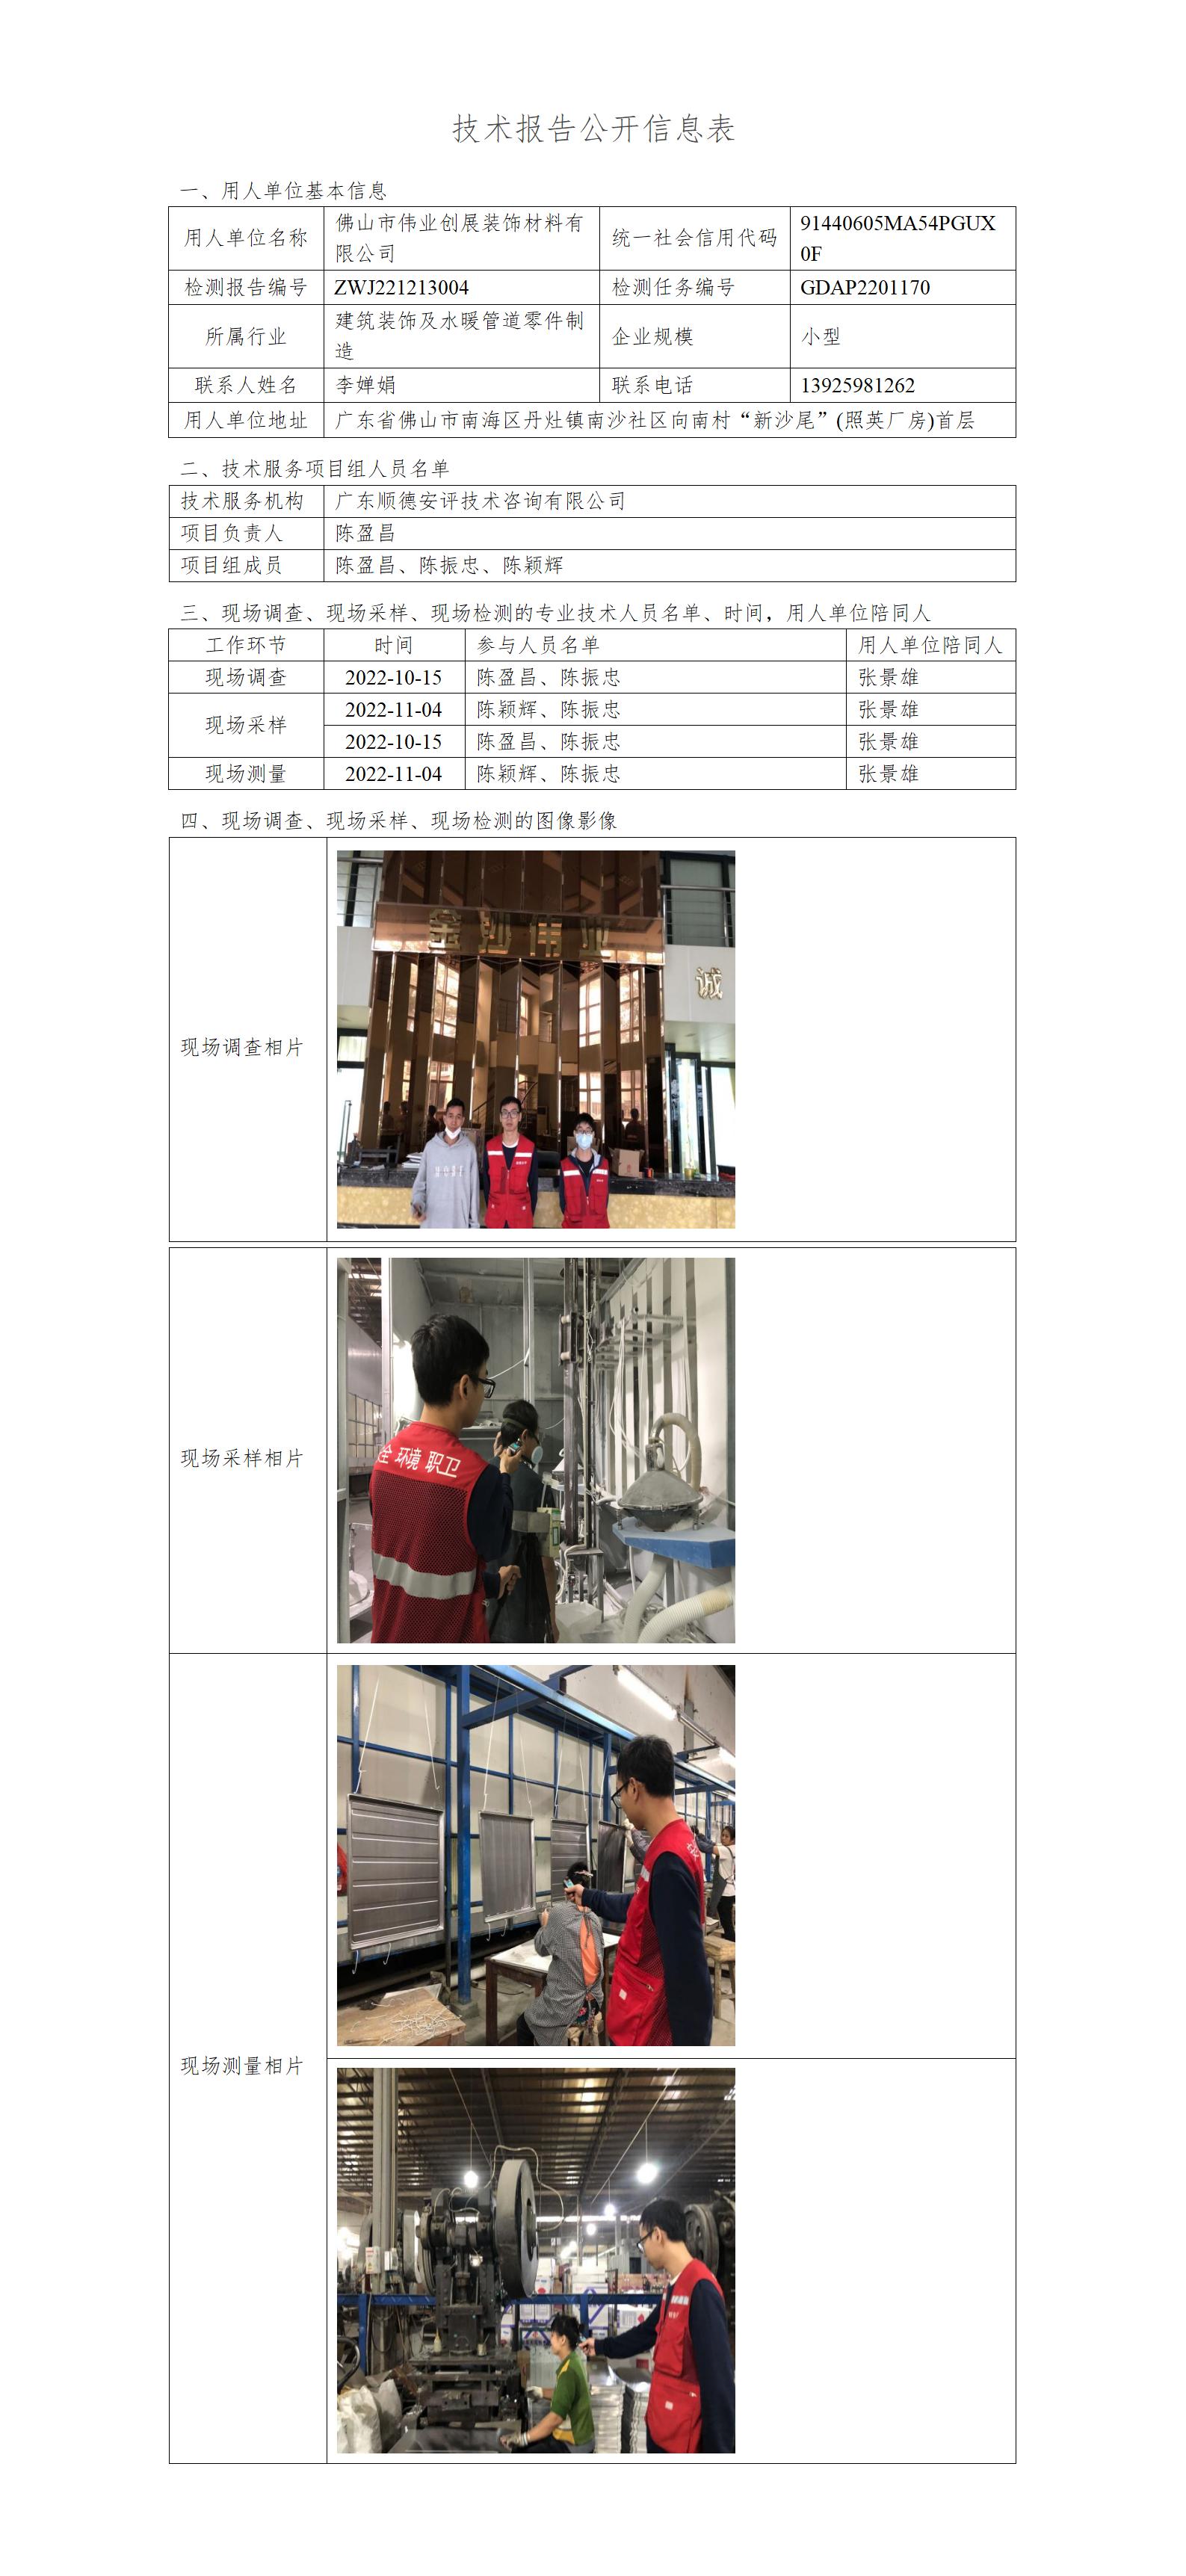 佛山市伟业创展装饰材料有限公司-2022-技术报告公开信息表_01.jpg